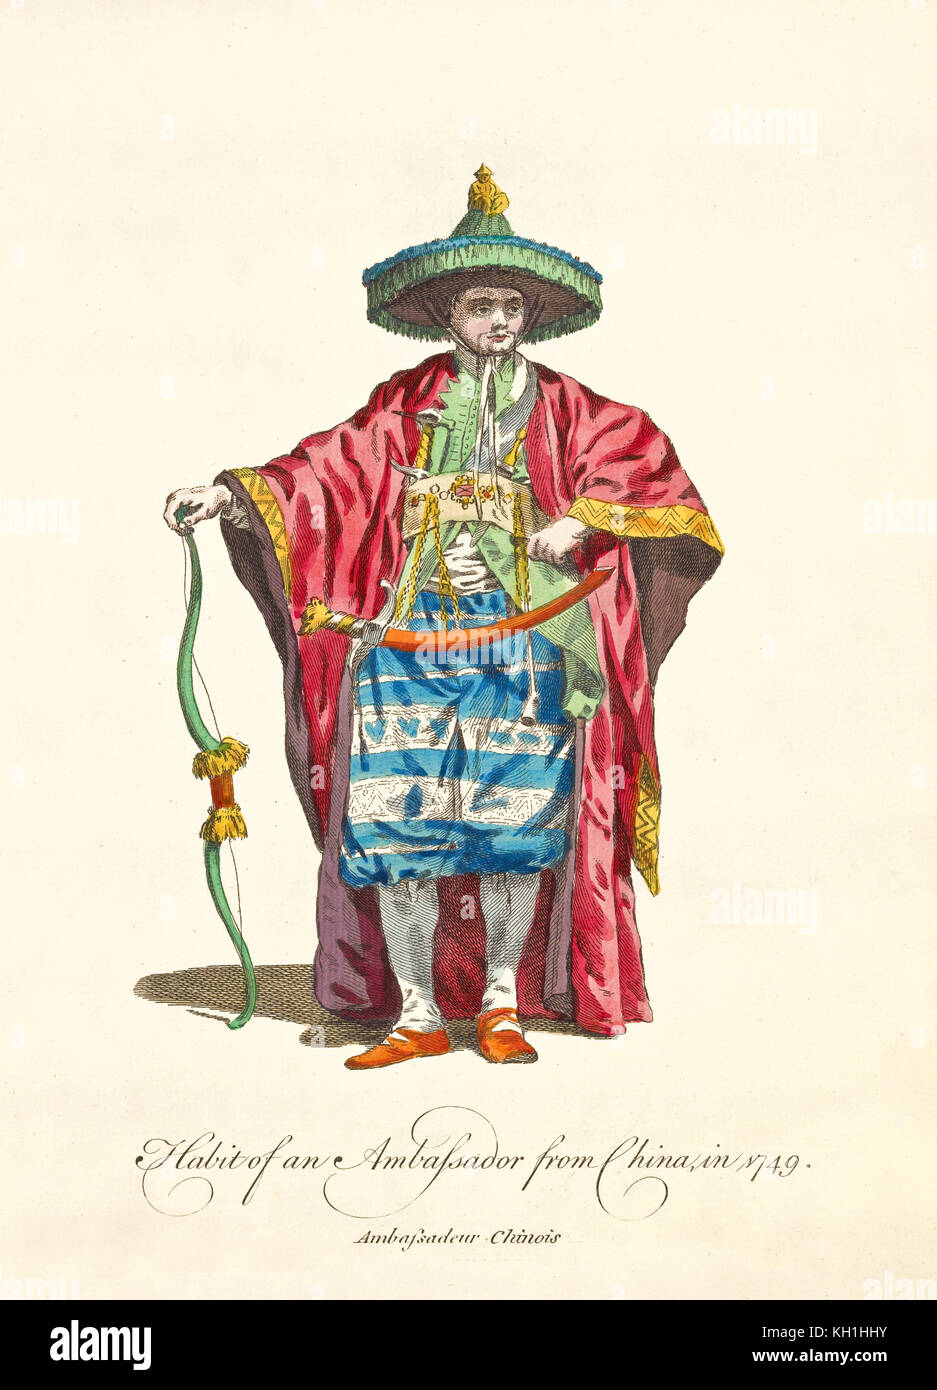 Vêtements traditionnels de l'ambassadeur chinois en 1749. Long manteau rouge, épée et noeud, chapeau de cône vert, bijoutiers. Ancienne illustration de J.M. Vien, 1757-1772 Banque D'Images